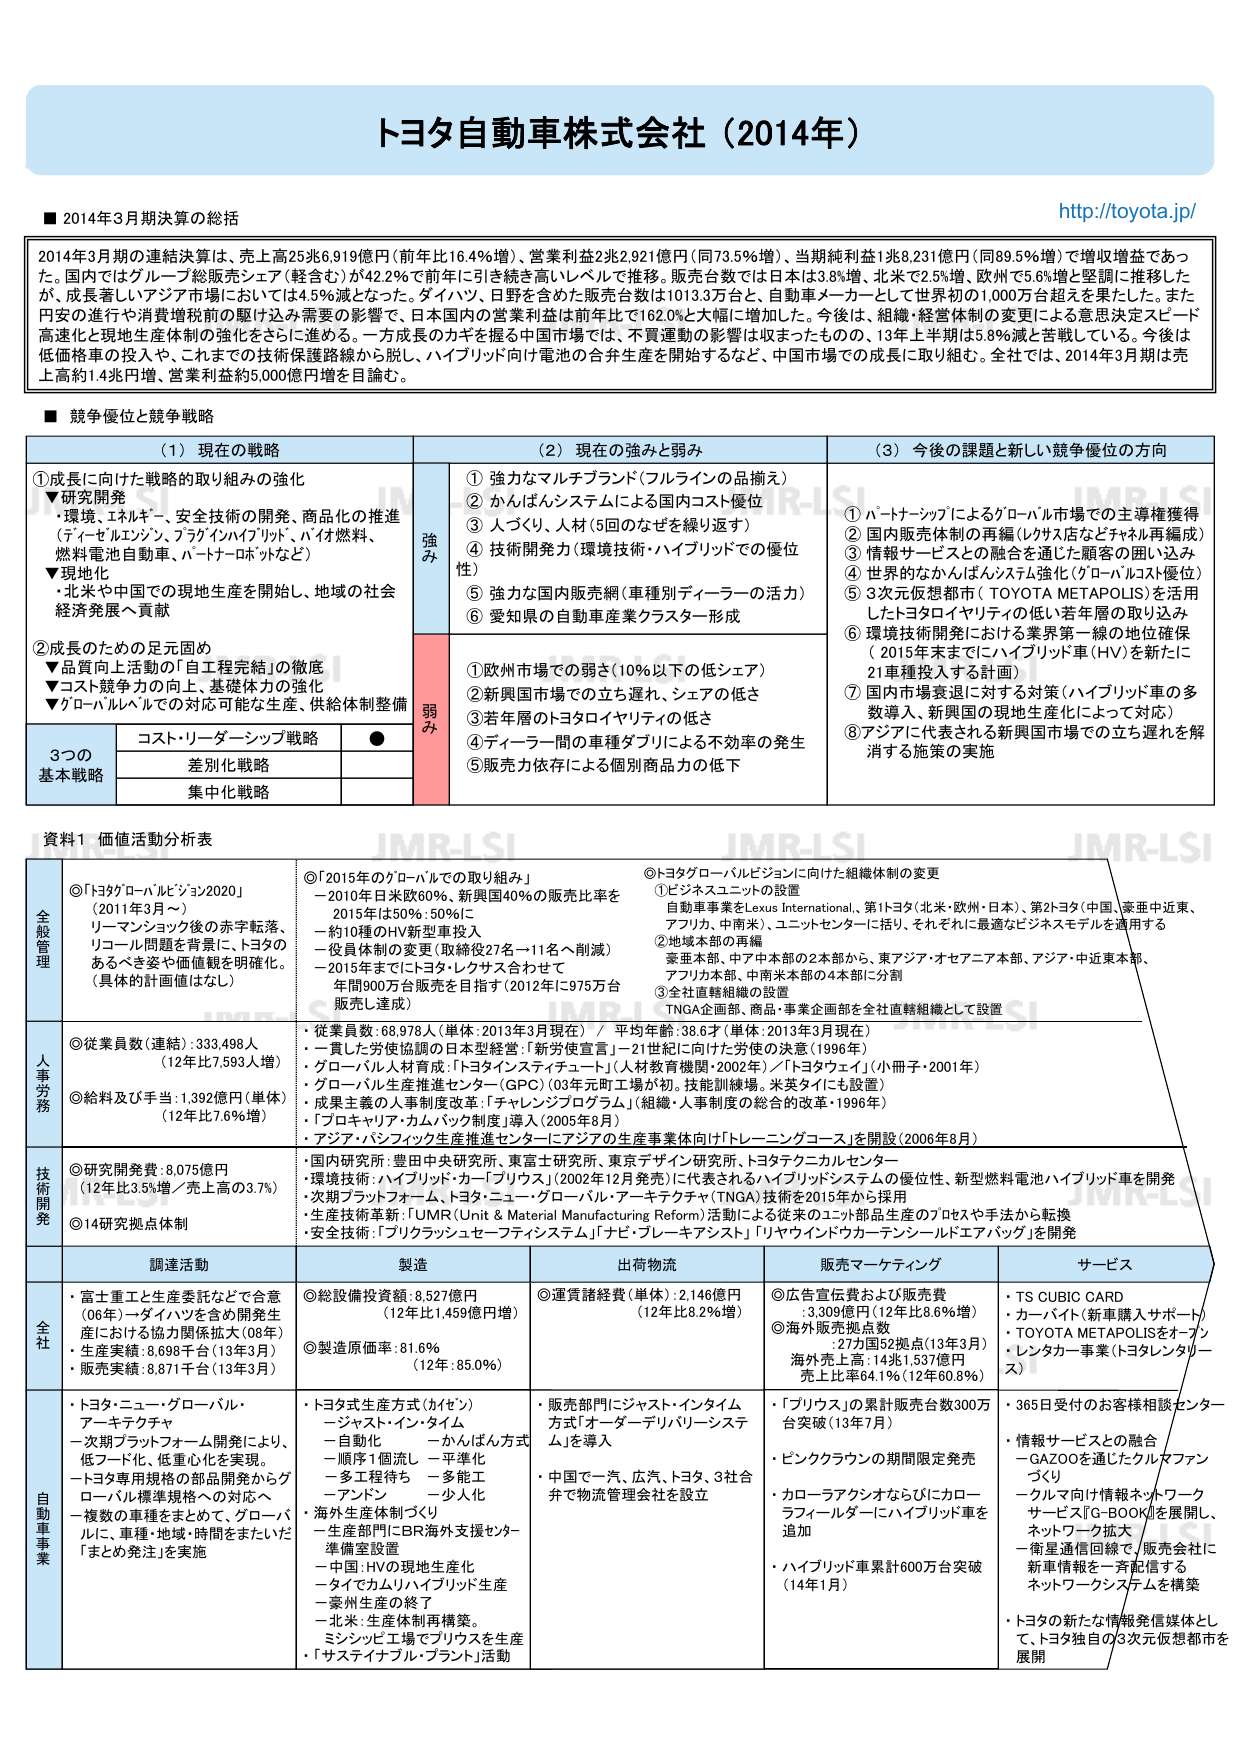 トヨタ自動車株式会社（2014年） - J-marketing.net produced by JMR